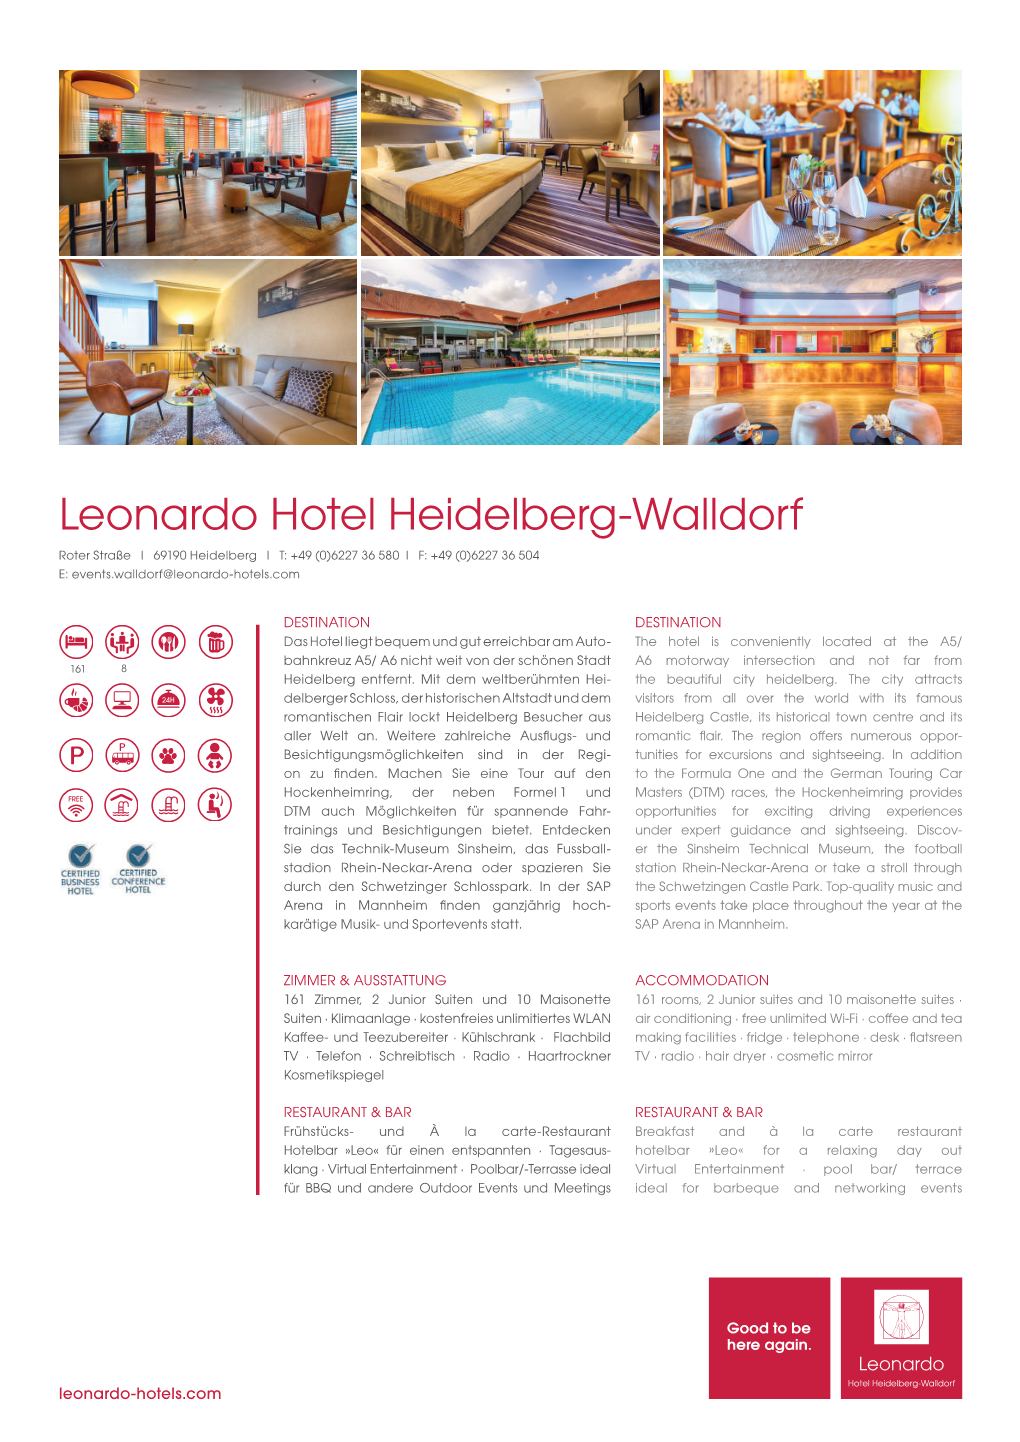 Leonardo Hotel Heidelberg-Walldorf Roter Straße I 69190 Heidelberg I T: +49 (0)6227 36 580 I F: +49 (0)6227 36 504 E: Events.Walldorf@Leonardo-Hotels.Com